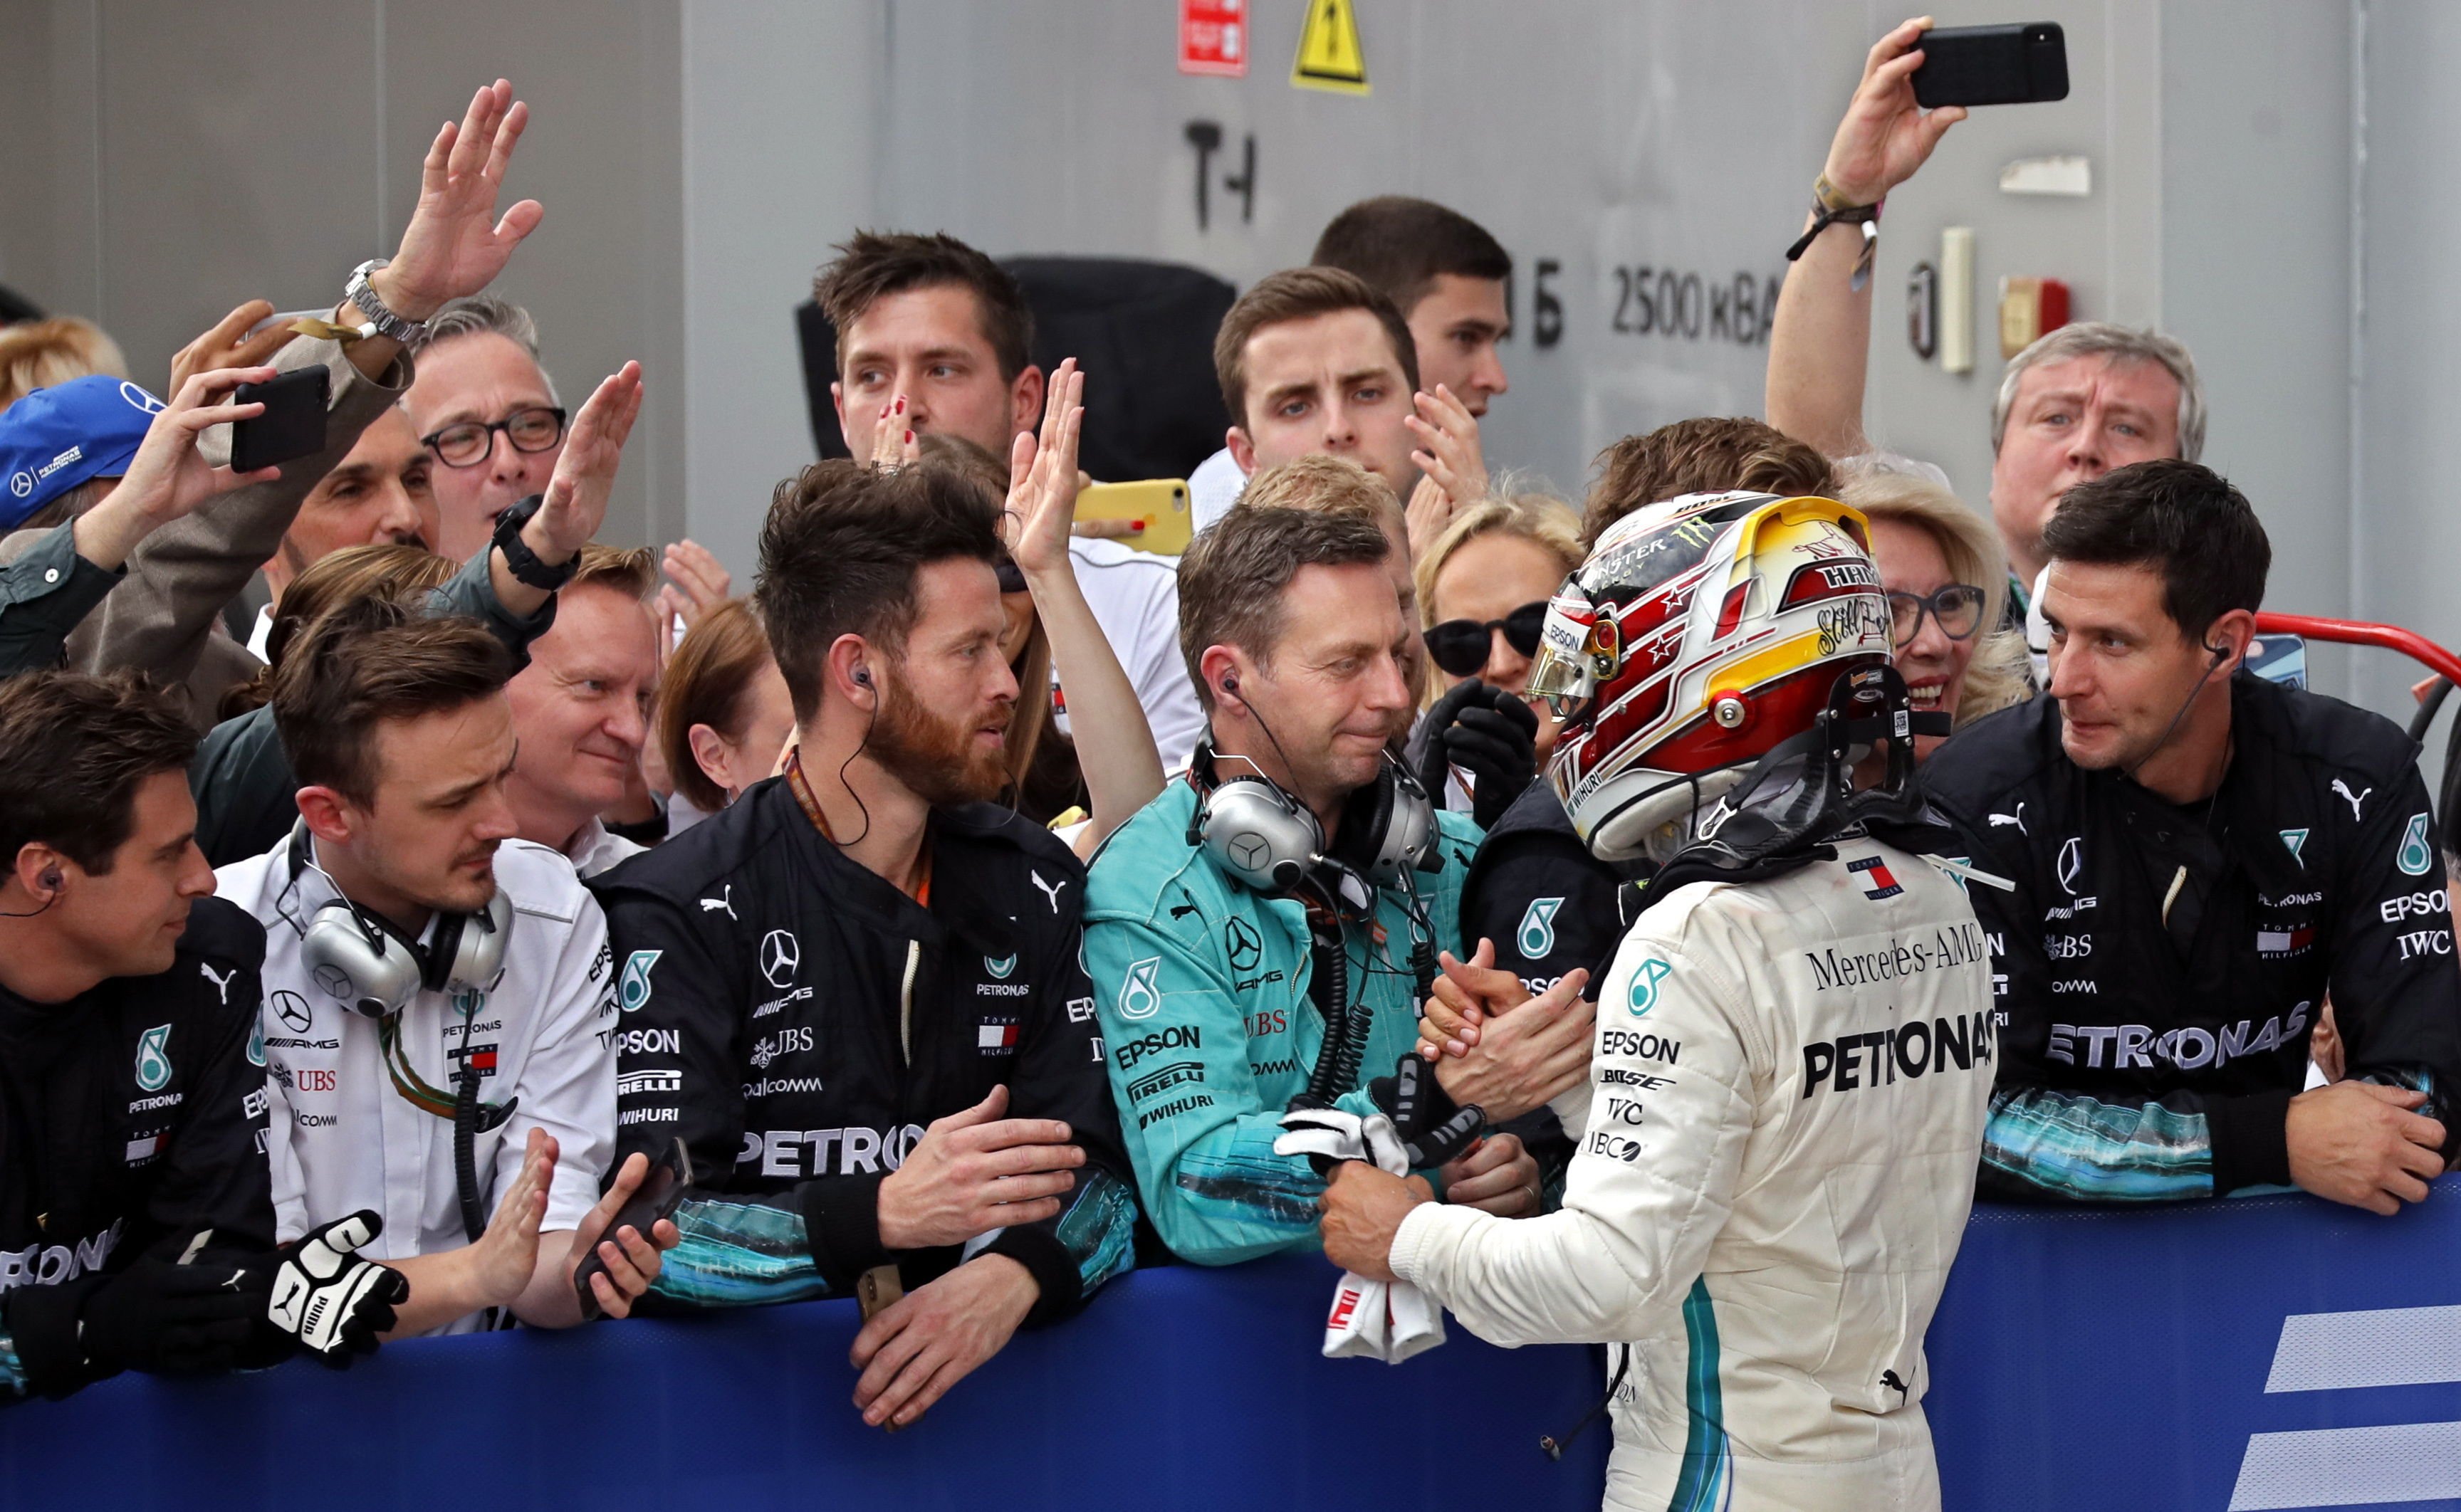 Les ordres de Mercedes serveixen en safata la victòria a Hamilton